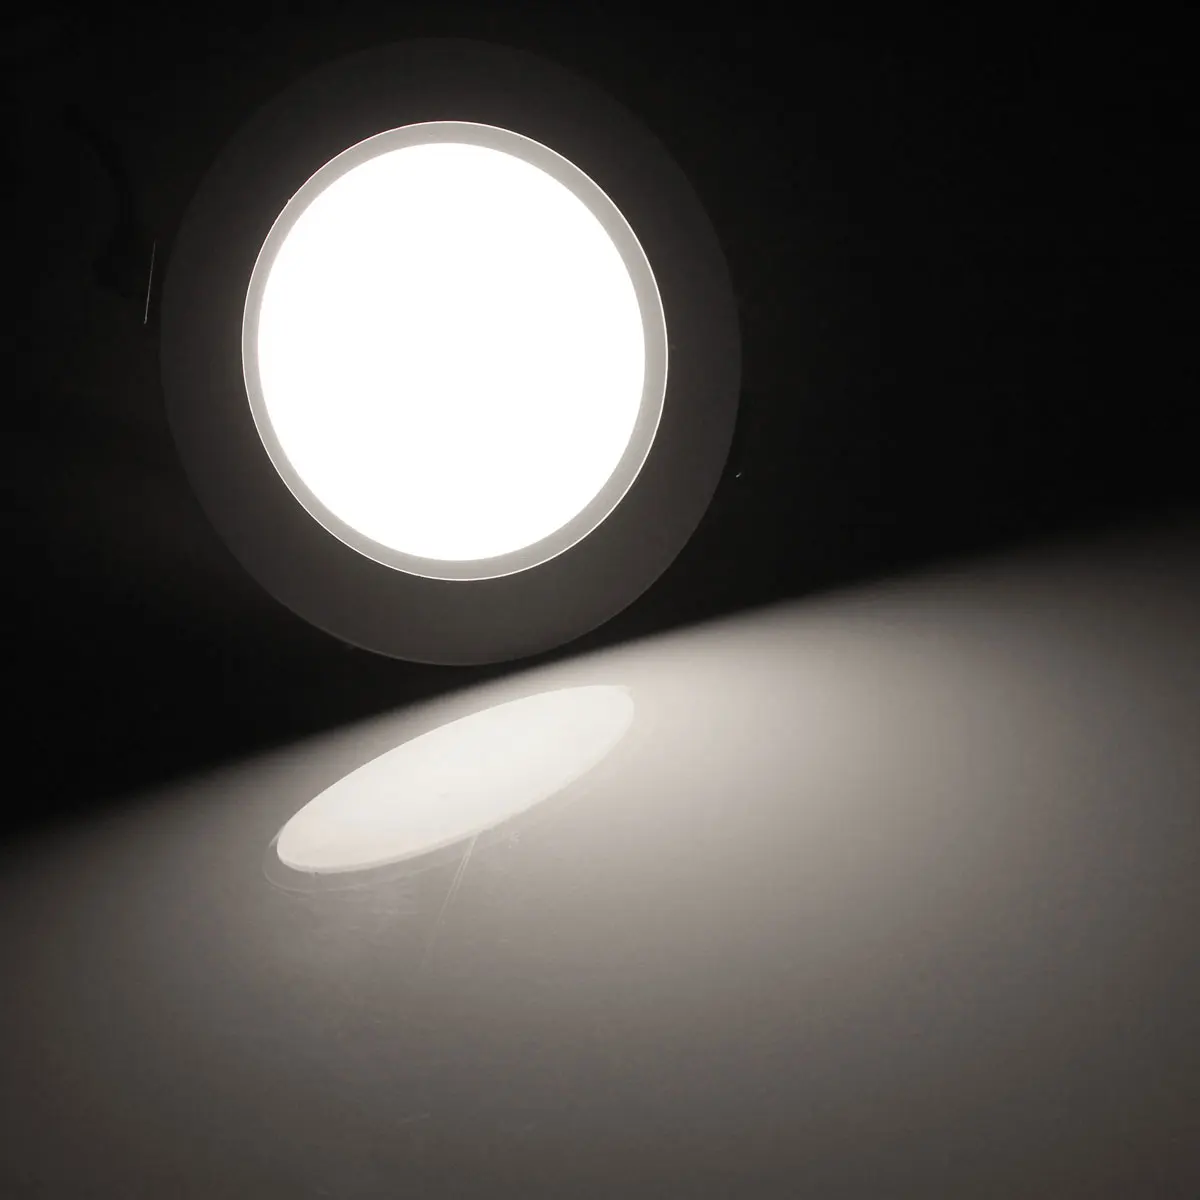 Jiguoor AC85-265V светодиодный светильник 5 Вт 7 Вт вниз свет с драйвером лампа Потолочные встраиваемые светильники Круглая Панель Свет лампада Led